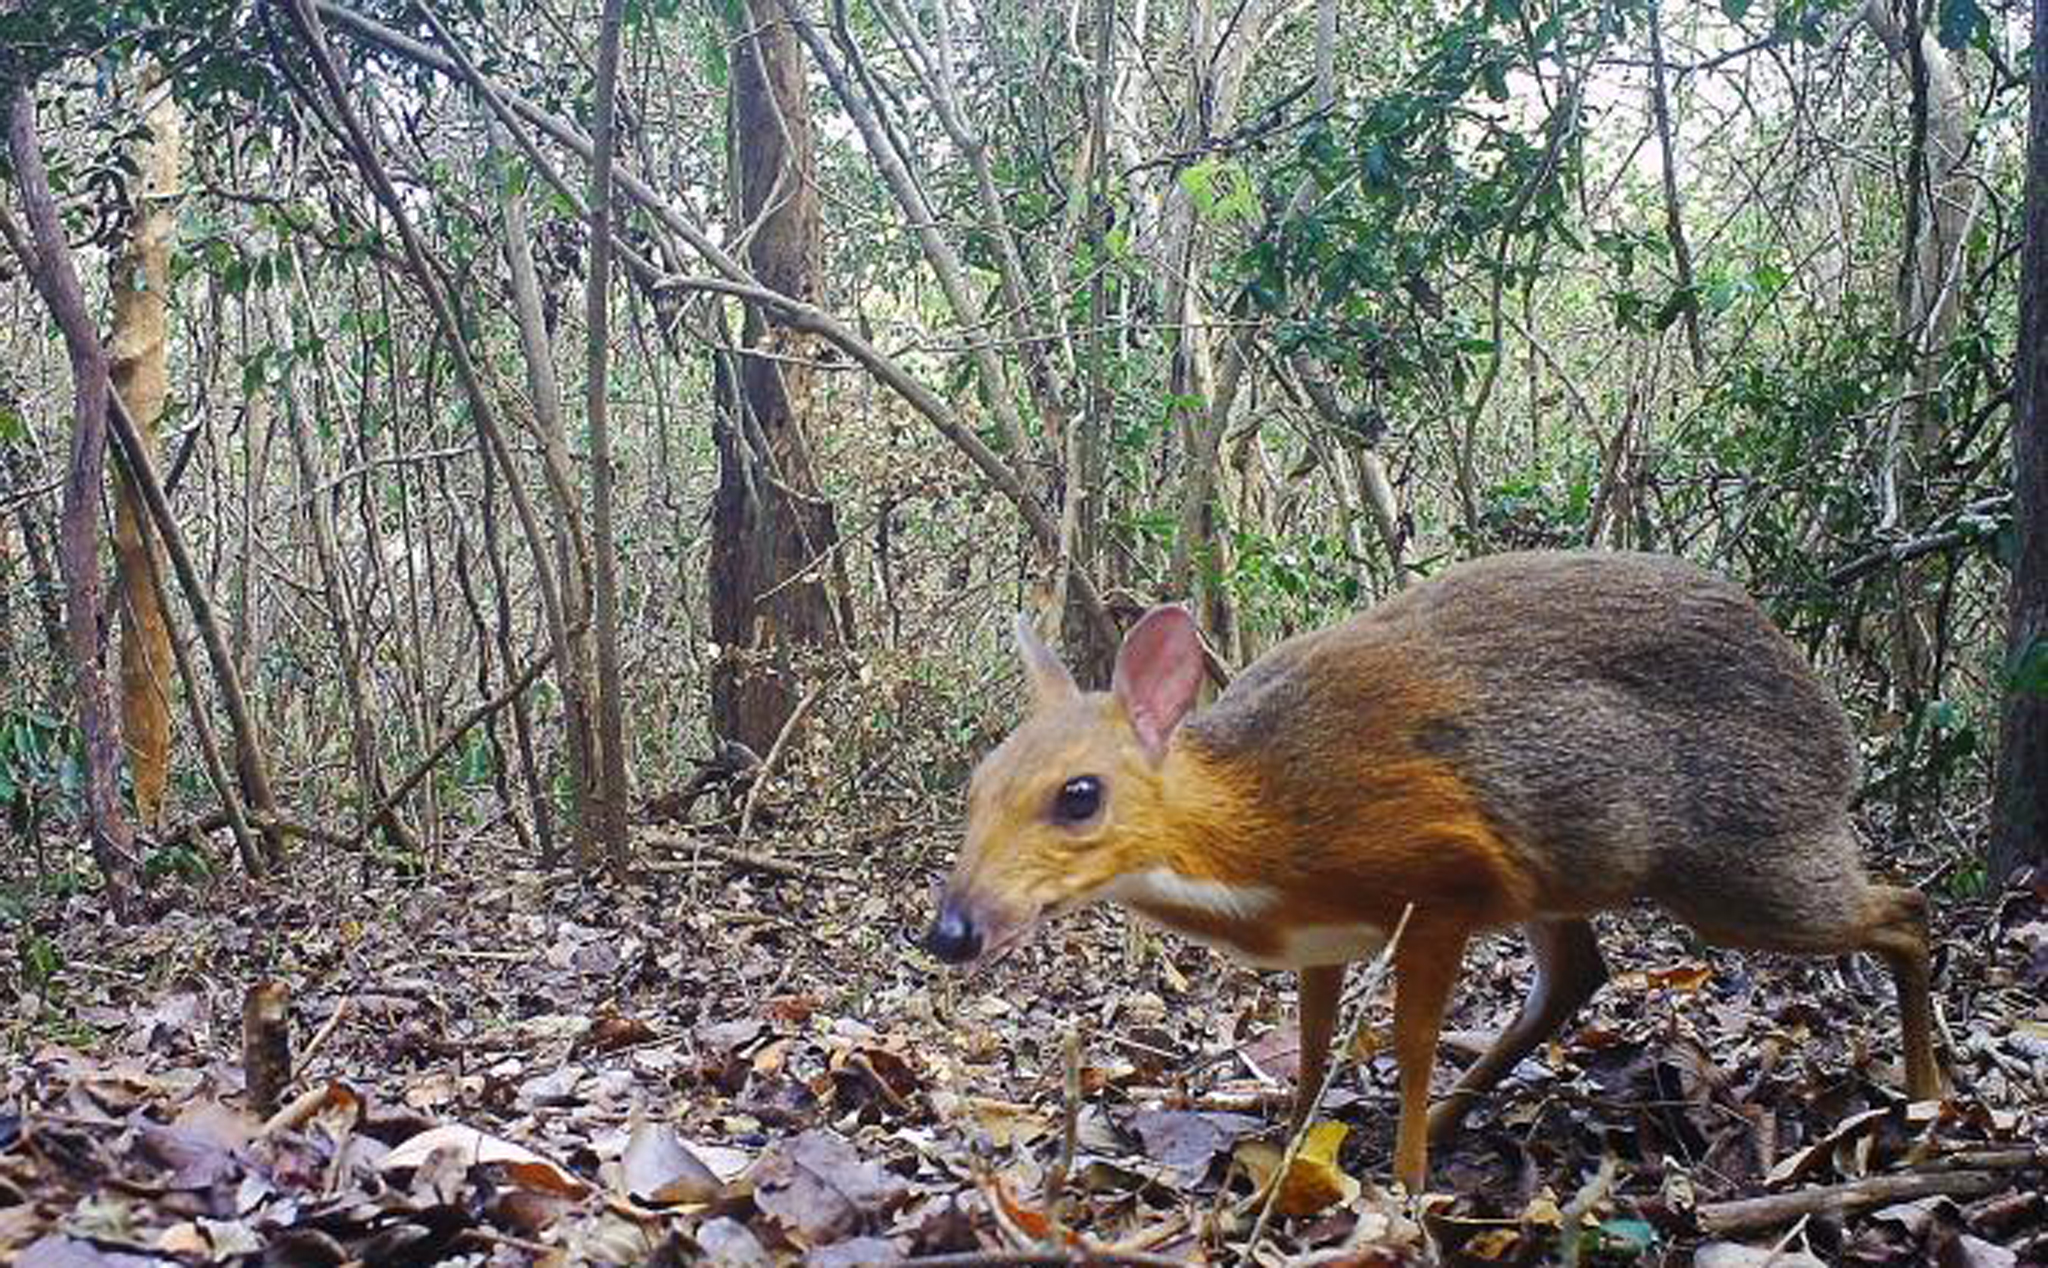 Sinh vật nghi đã tuyệt chủng bất ngờ được bắt gặp tại rừng Việt Nam